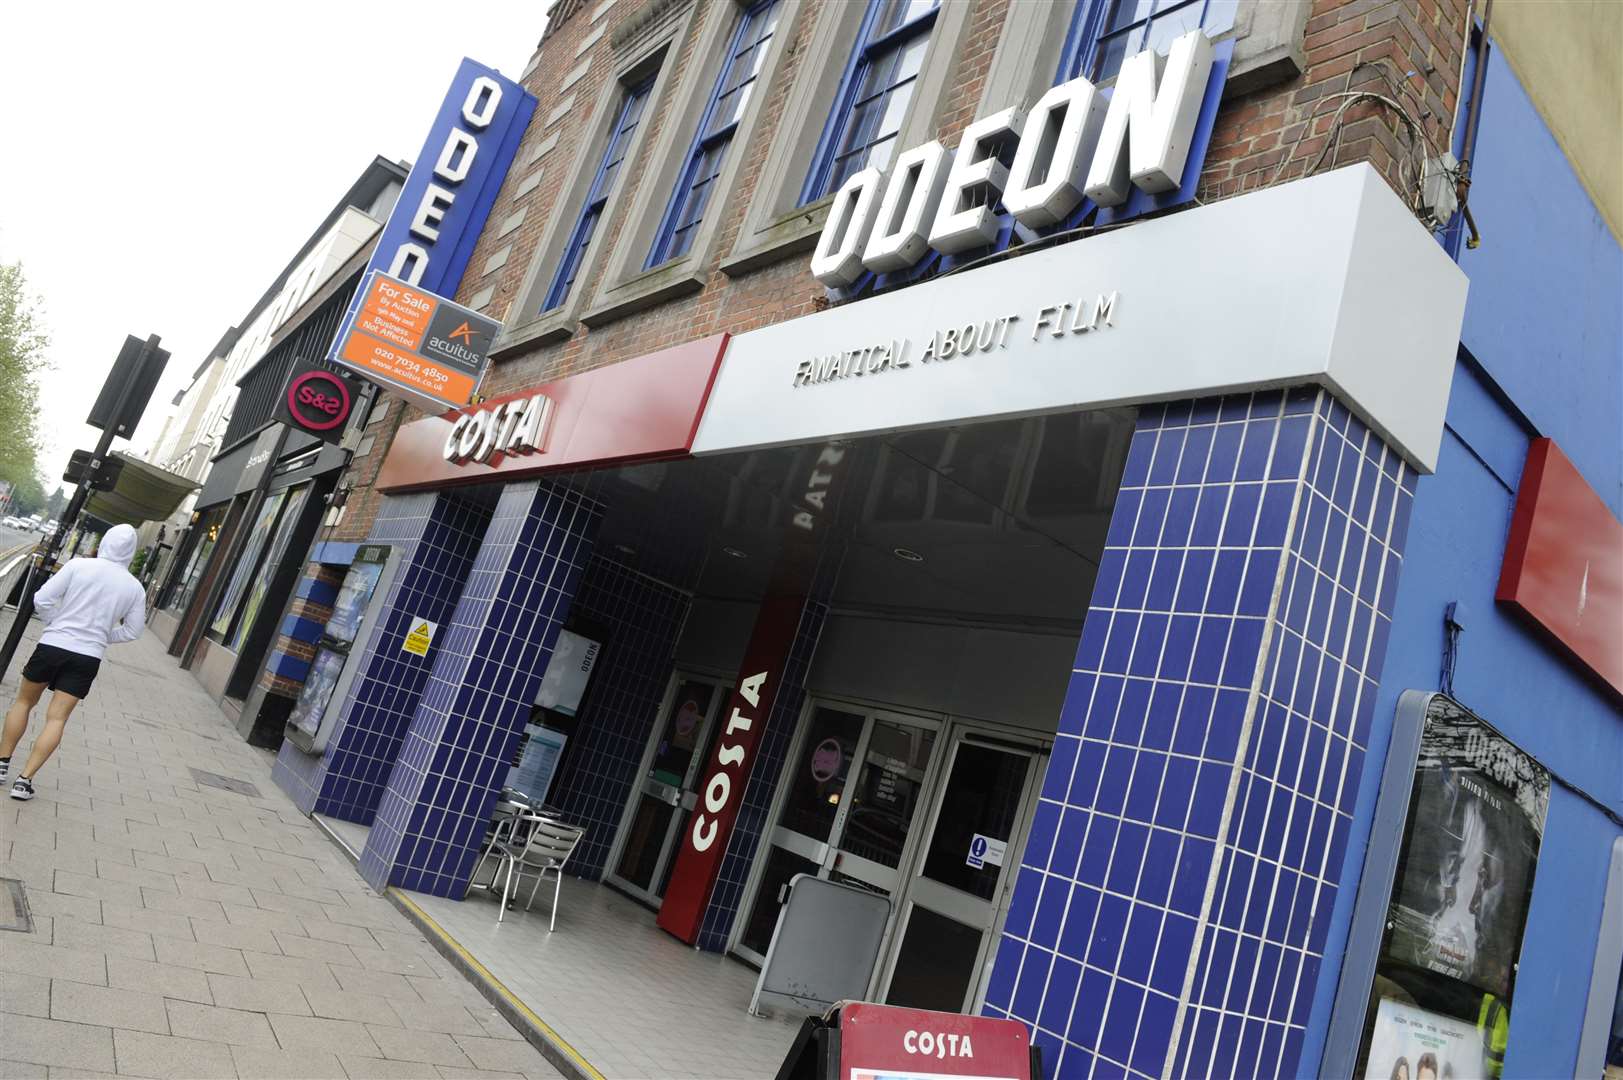 Odeon cinema in Canterbury will remain shut until next year